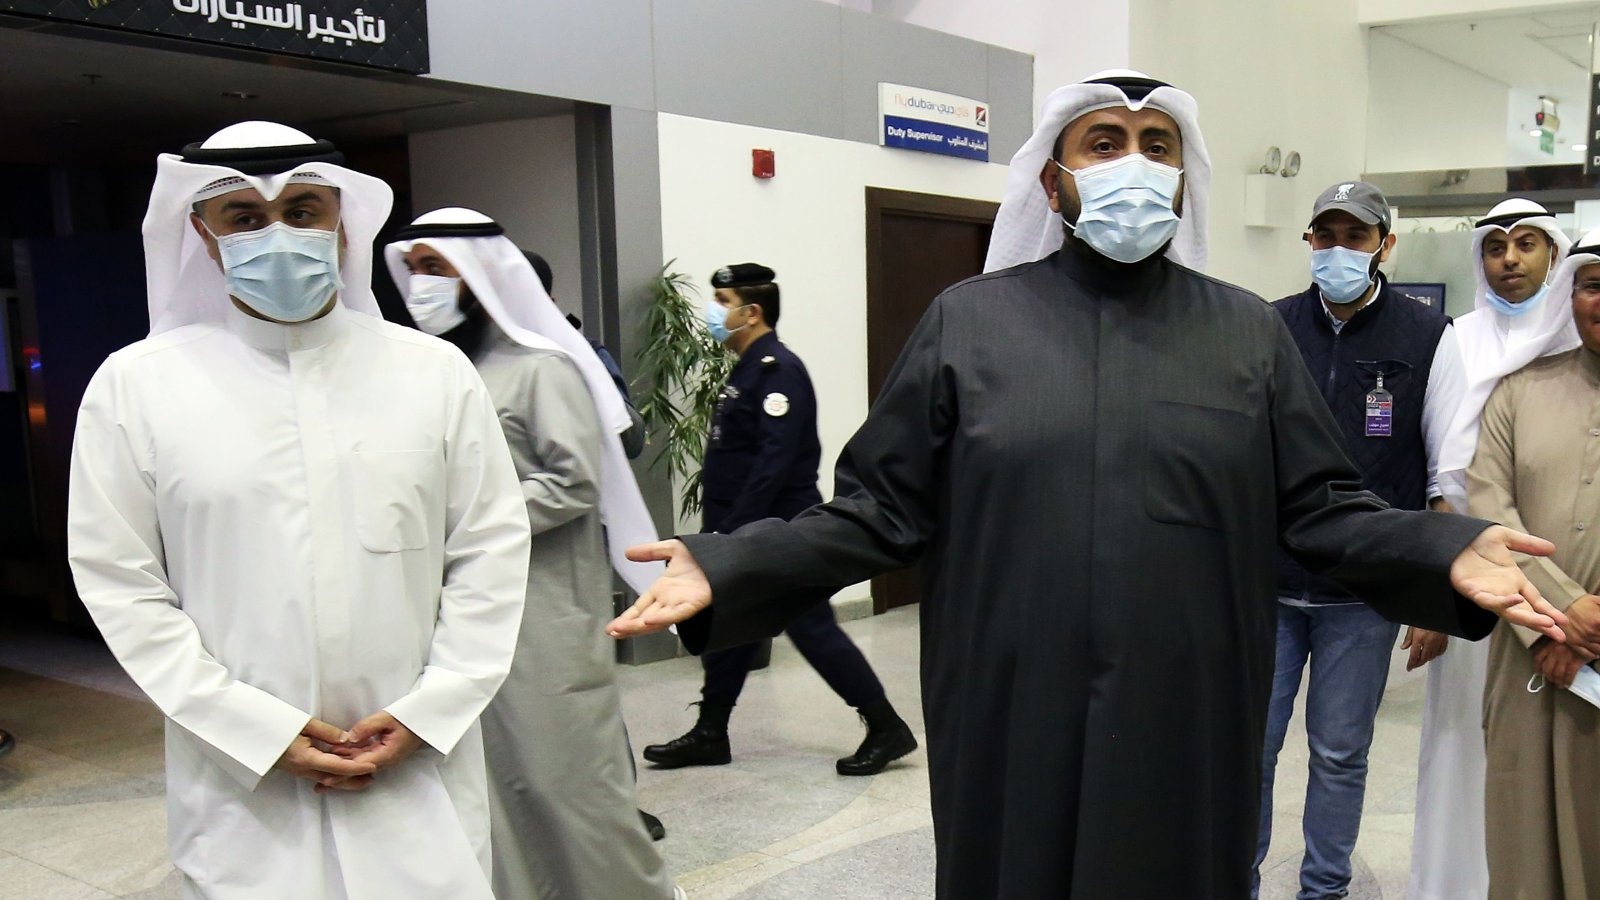 وزير الصحة الكويتي الشيخ باسل الصباح (يمين) يتحدث إلى الصحافة في مطار الشيخ سعد في مدينة الكويت، الكويت. 22 شباط/فبراير 2020.